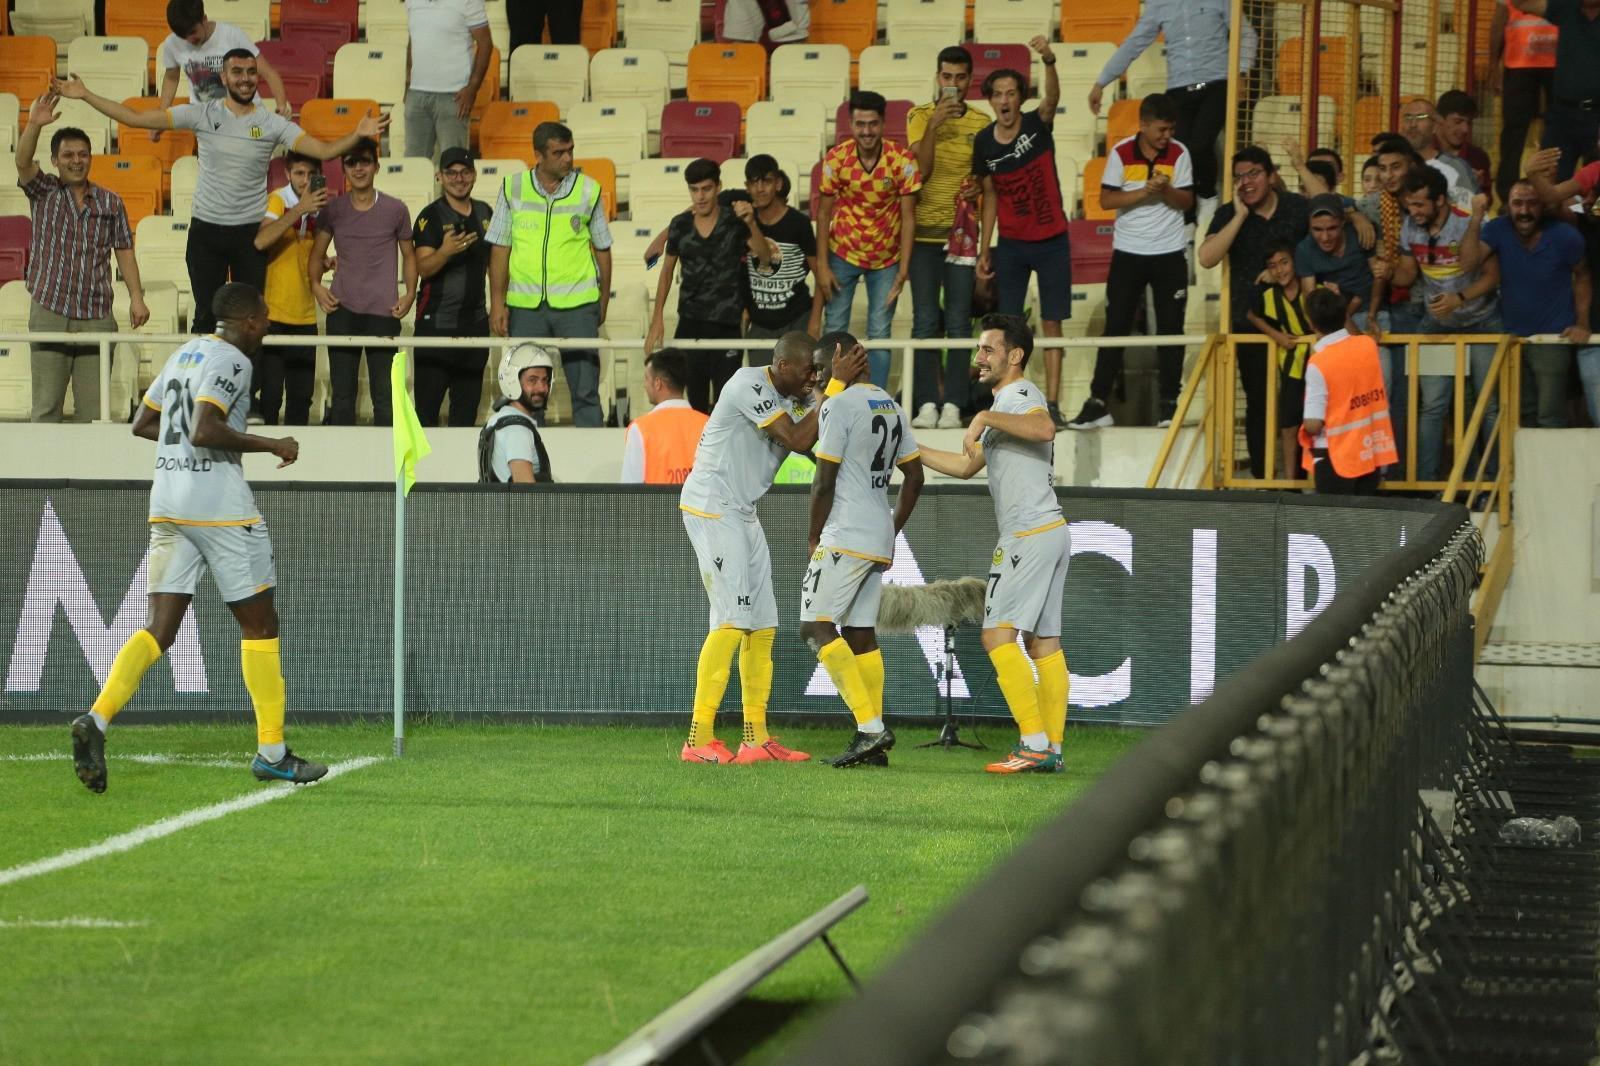 Yeni Malatyaspor 3 puanı 3 golle aldı